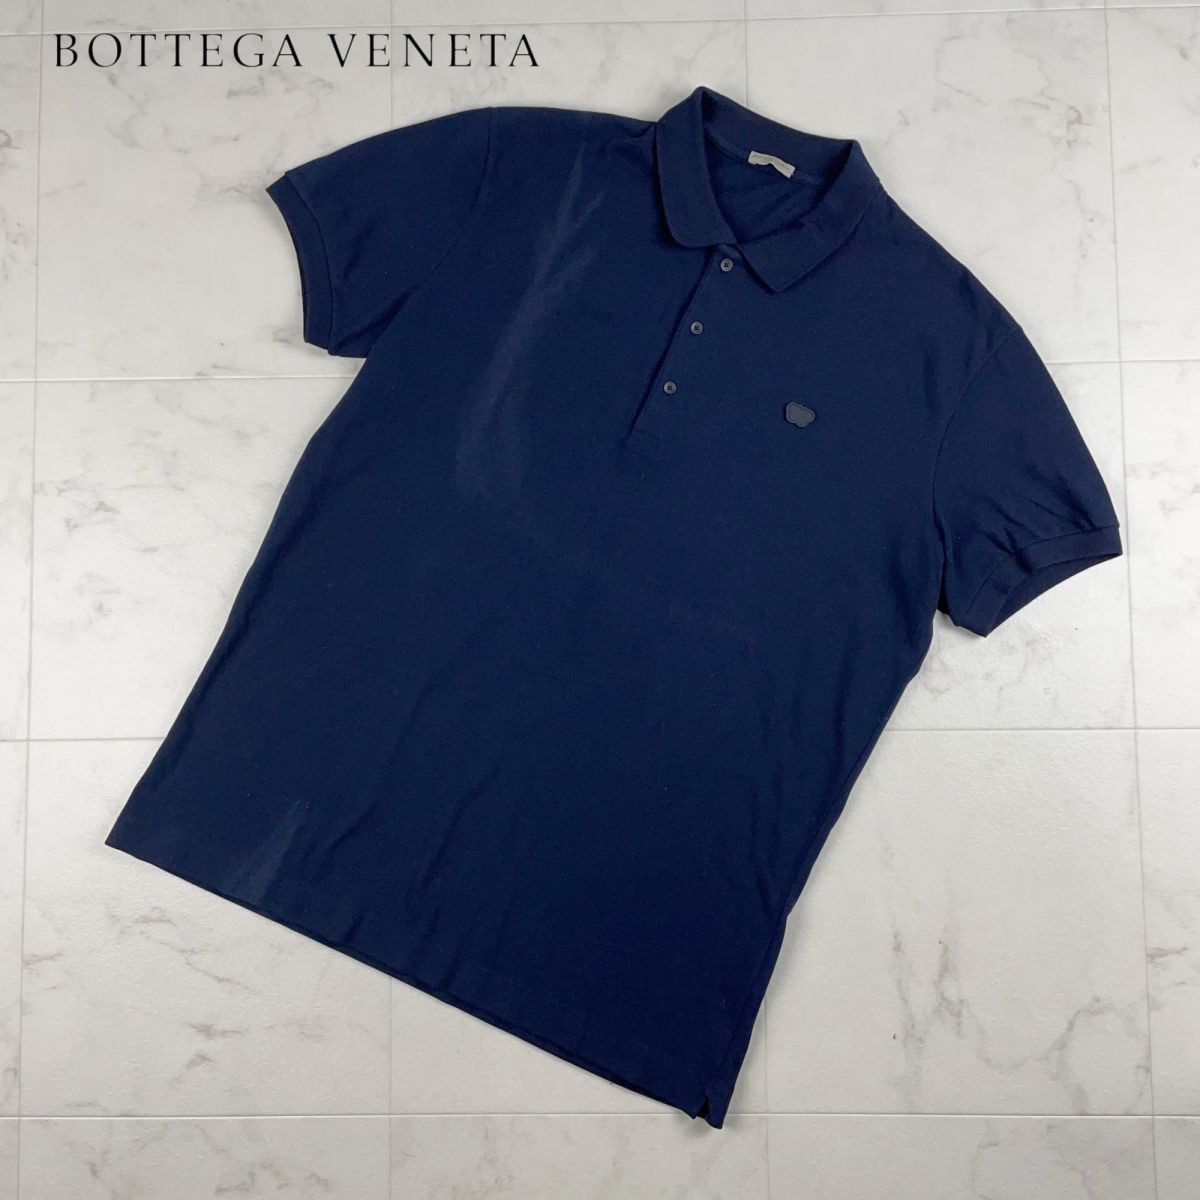 BOTTEGA VENETA ボッテガヴェネタ ポロシャツ トップス メンズ 黒 ブラック サイズ52*JC737の画像1